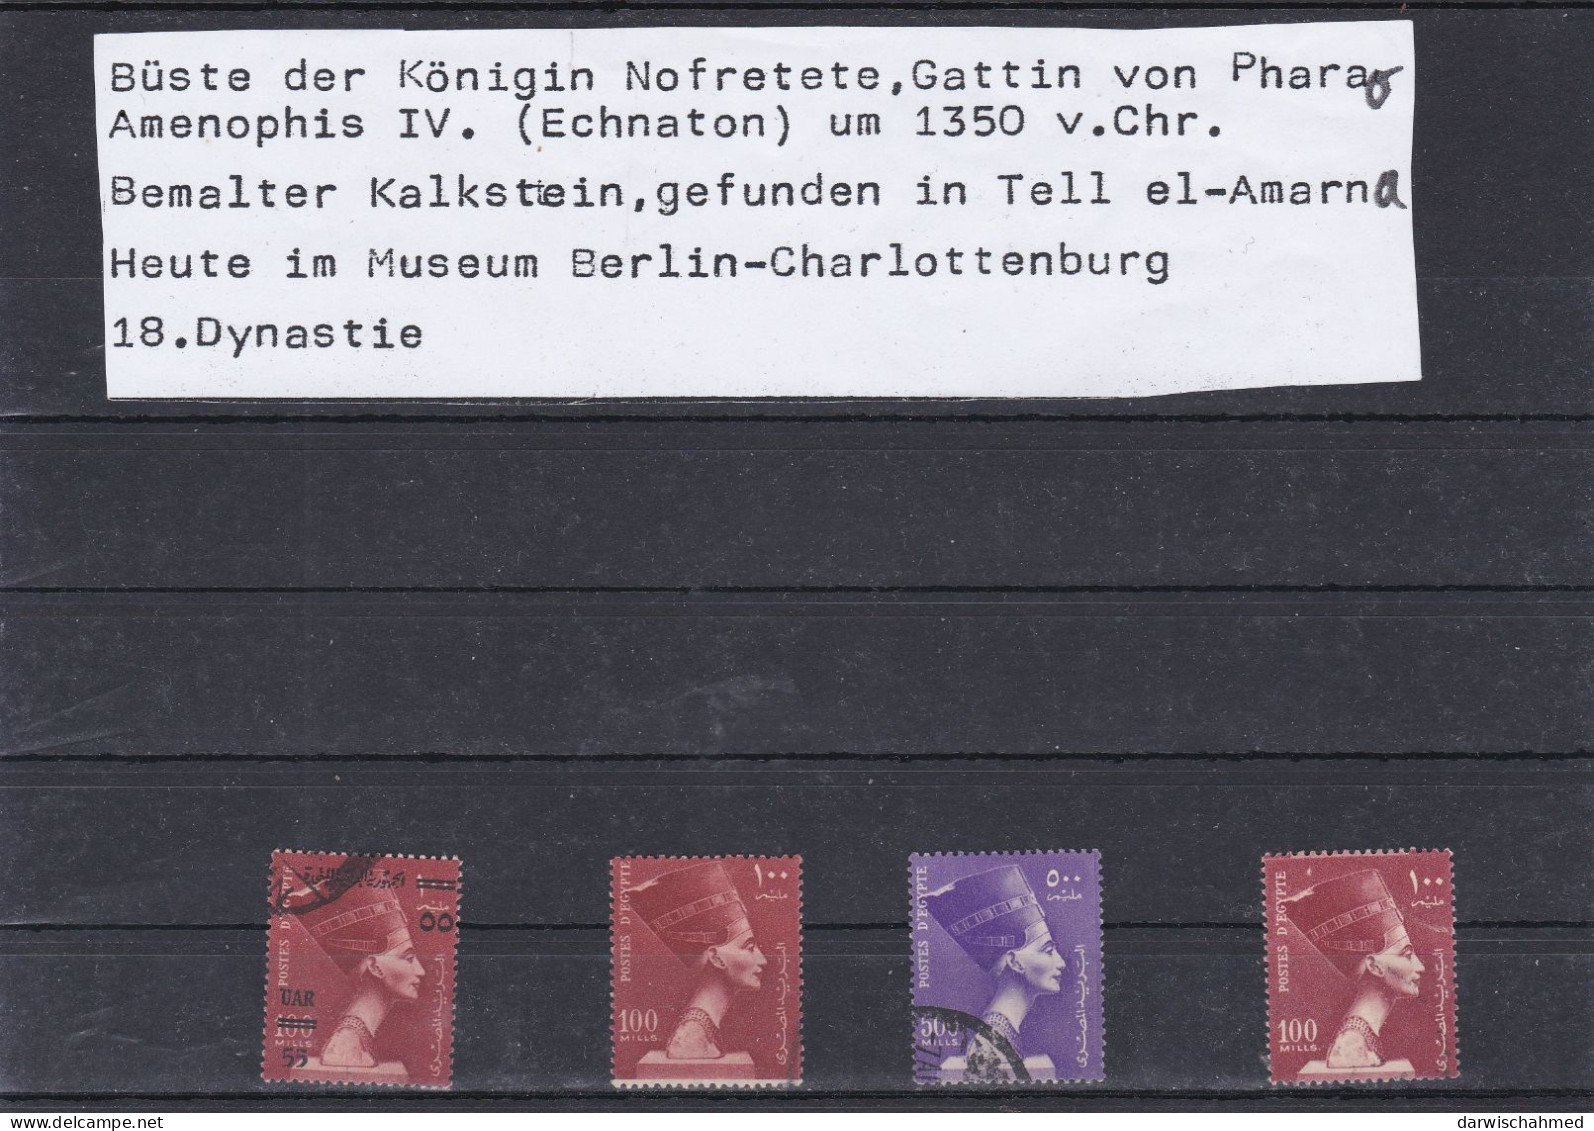 ÄGYPTEN - ÄGYPTOLOGIE - DYNASTIE -GESCHICHTE - ÄGYPTOLOGIE - KÖNIGIN NOFRETETE1953 - Used Stamps